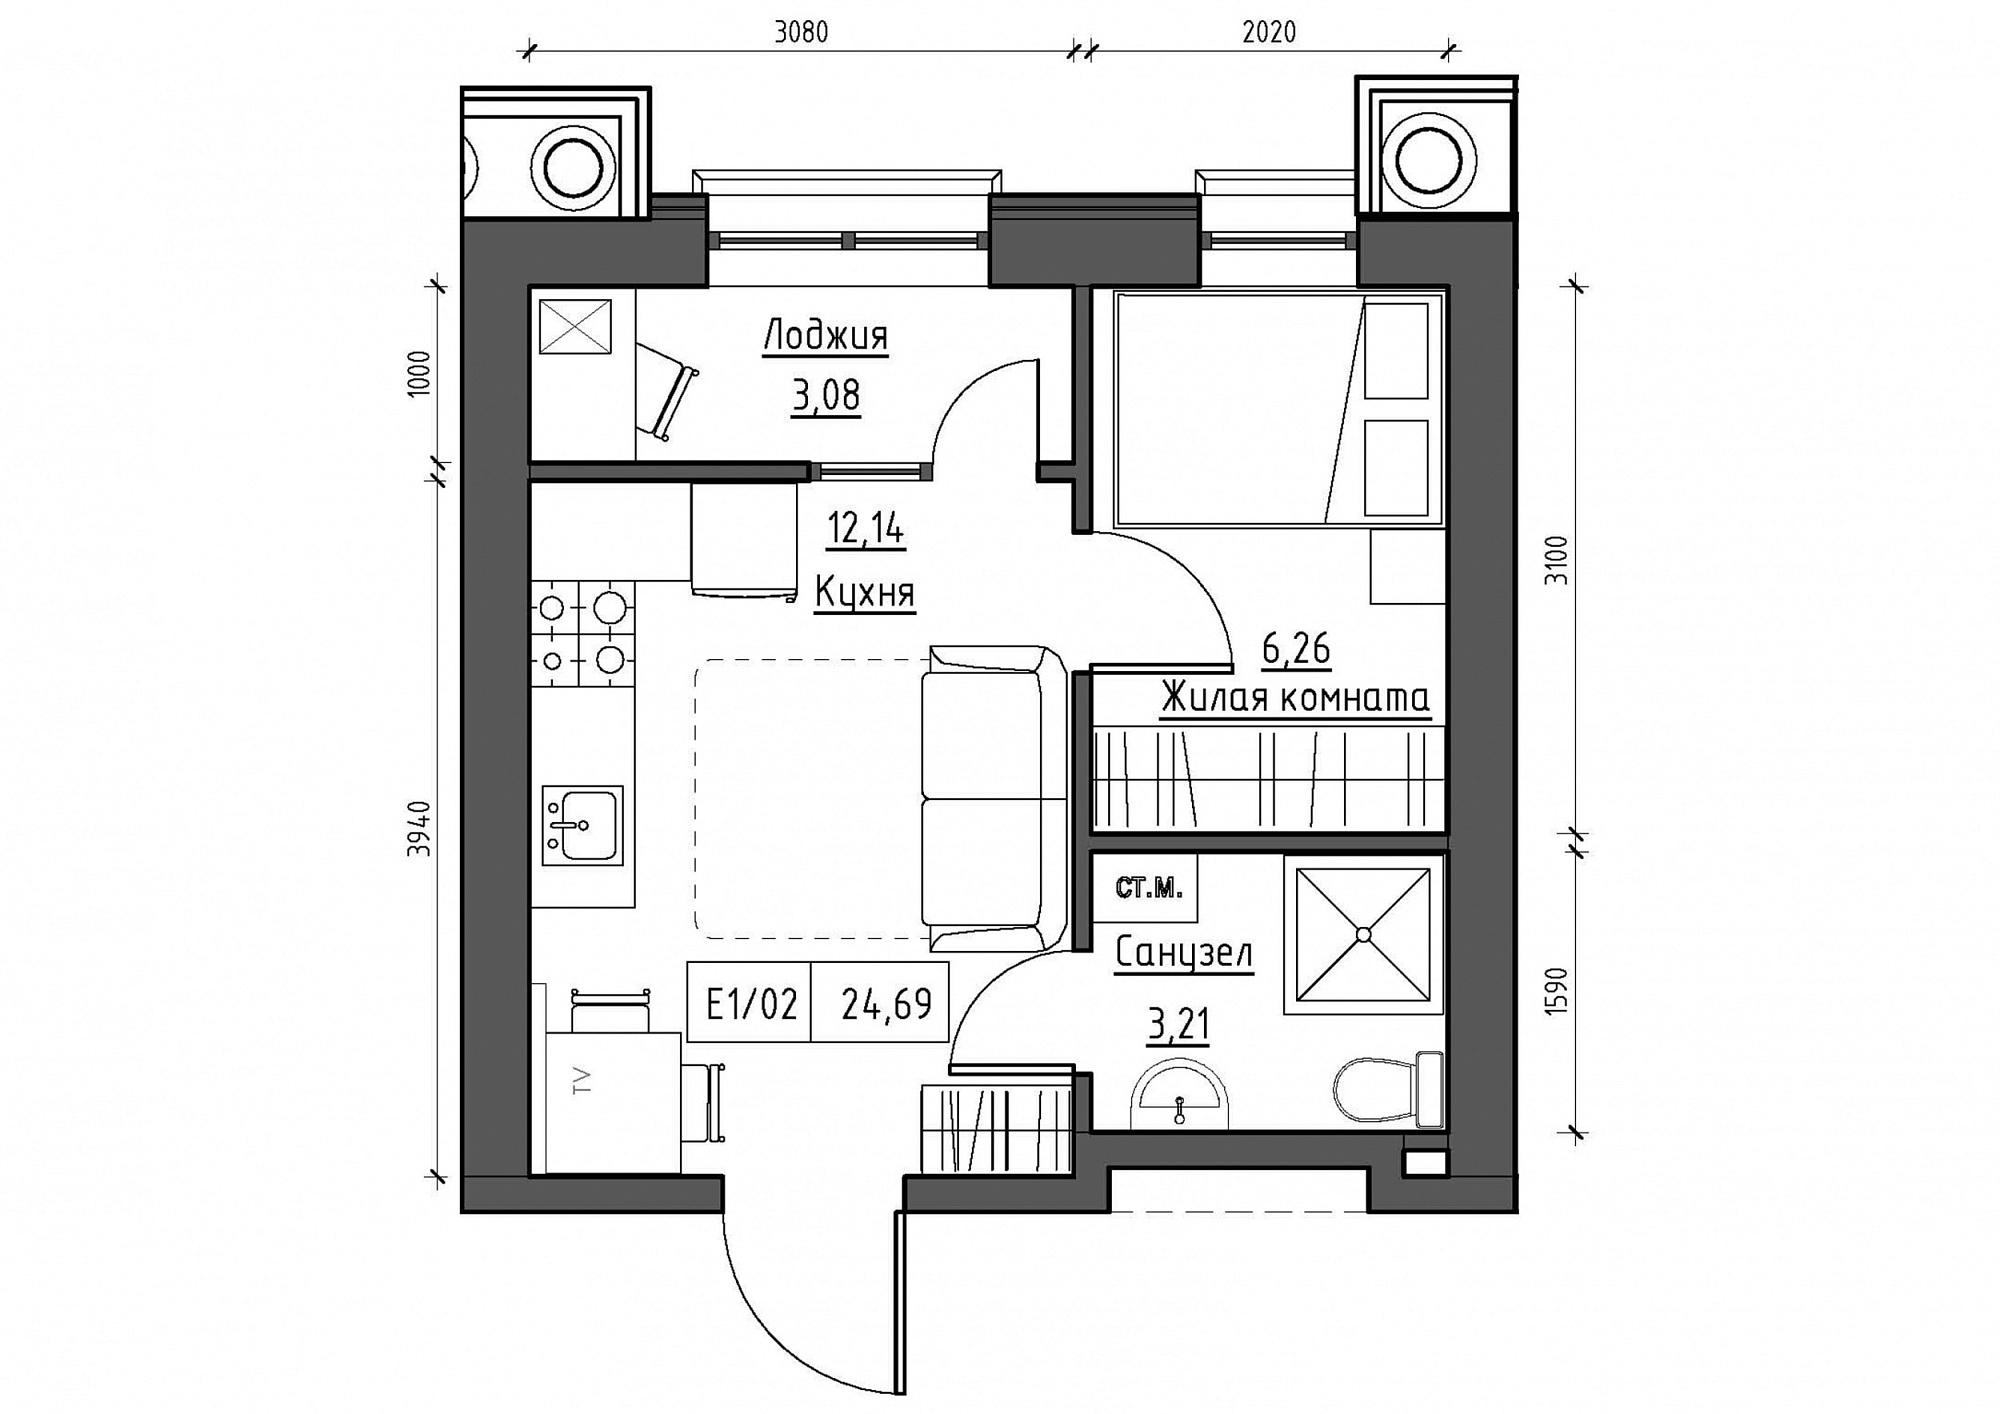 Планировка 1-к квартира площей 25.11м2, KS-012-05/0002.